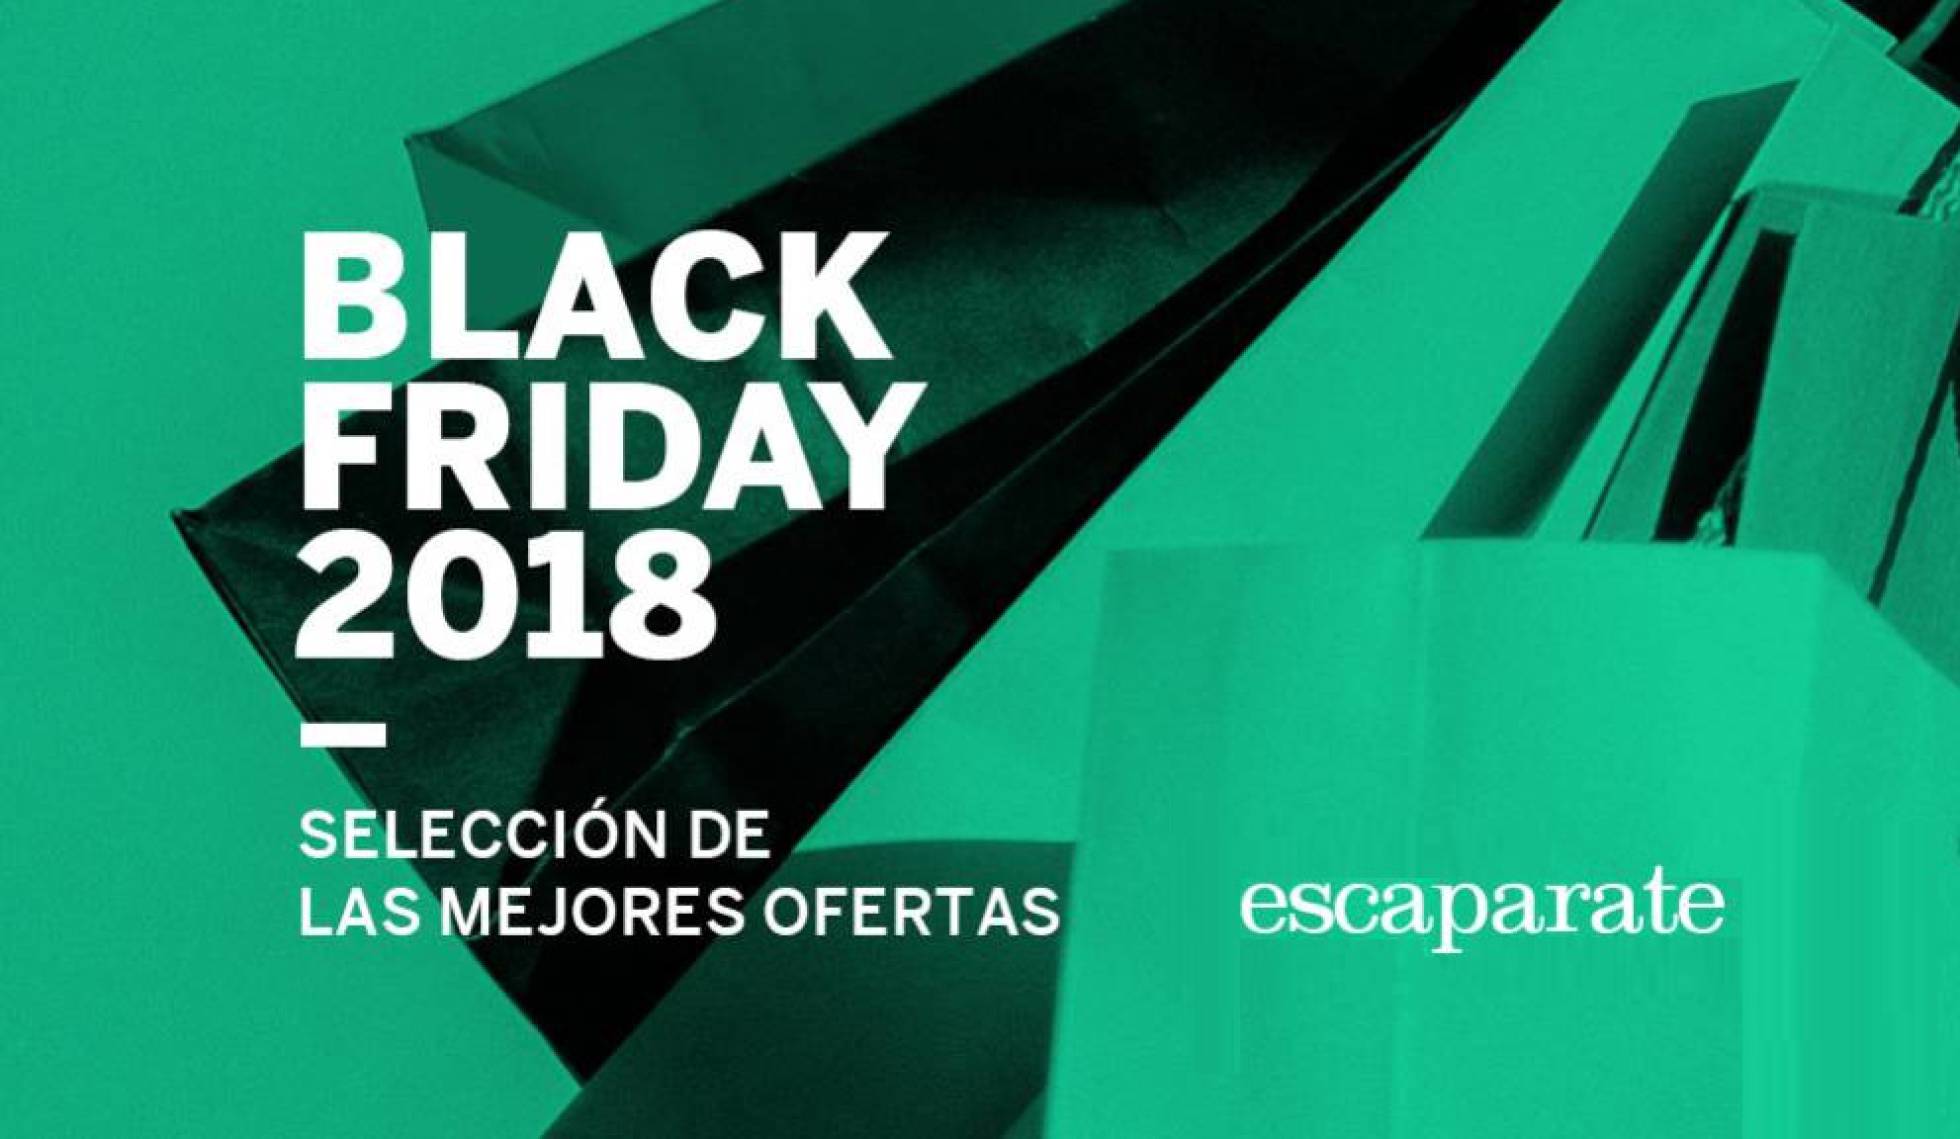 ‘Black Friday’ 2018 las mejores ofertas y descuentos Escaparate EL